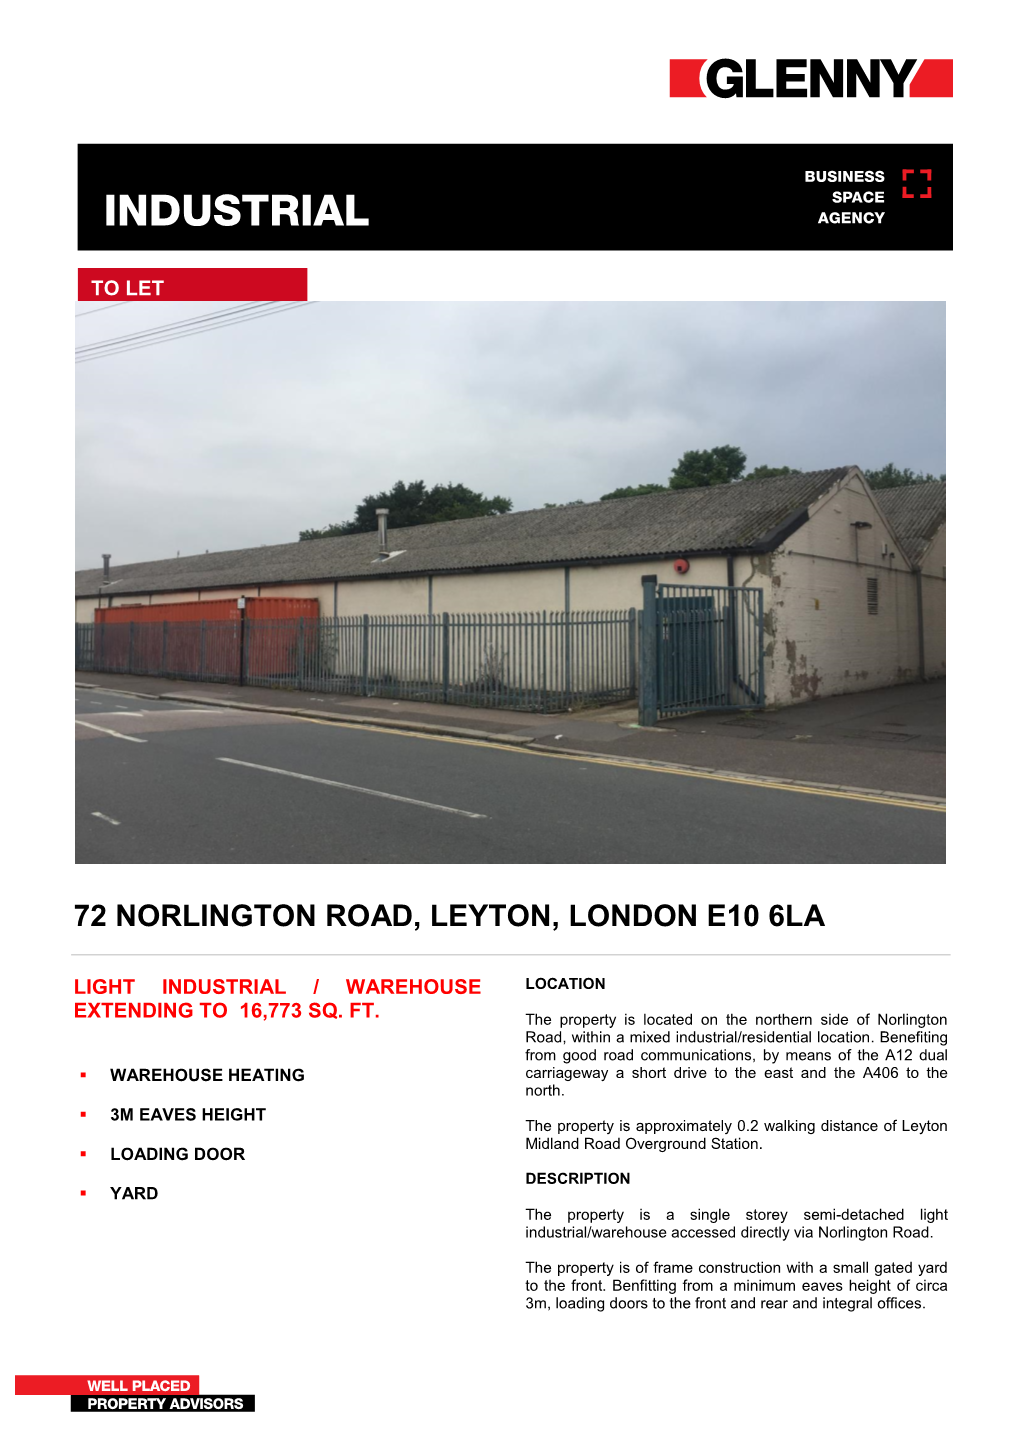 72 Norlington Road, Leyton, London E10 6La